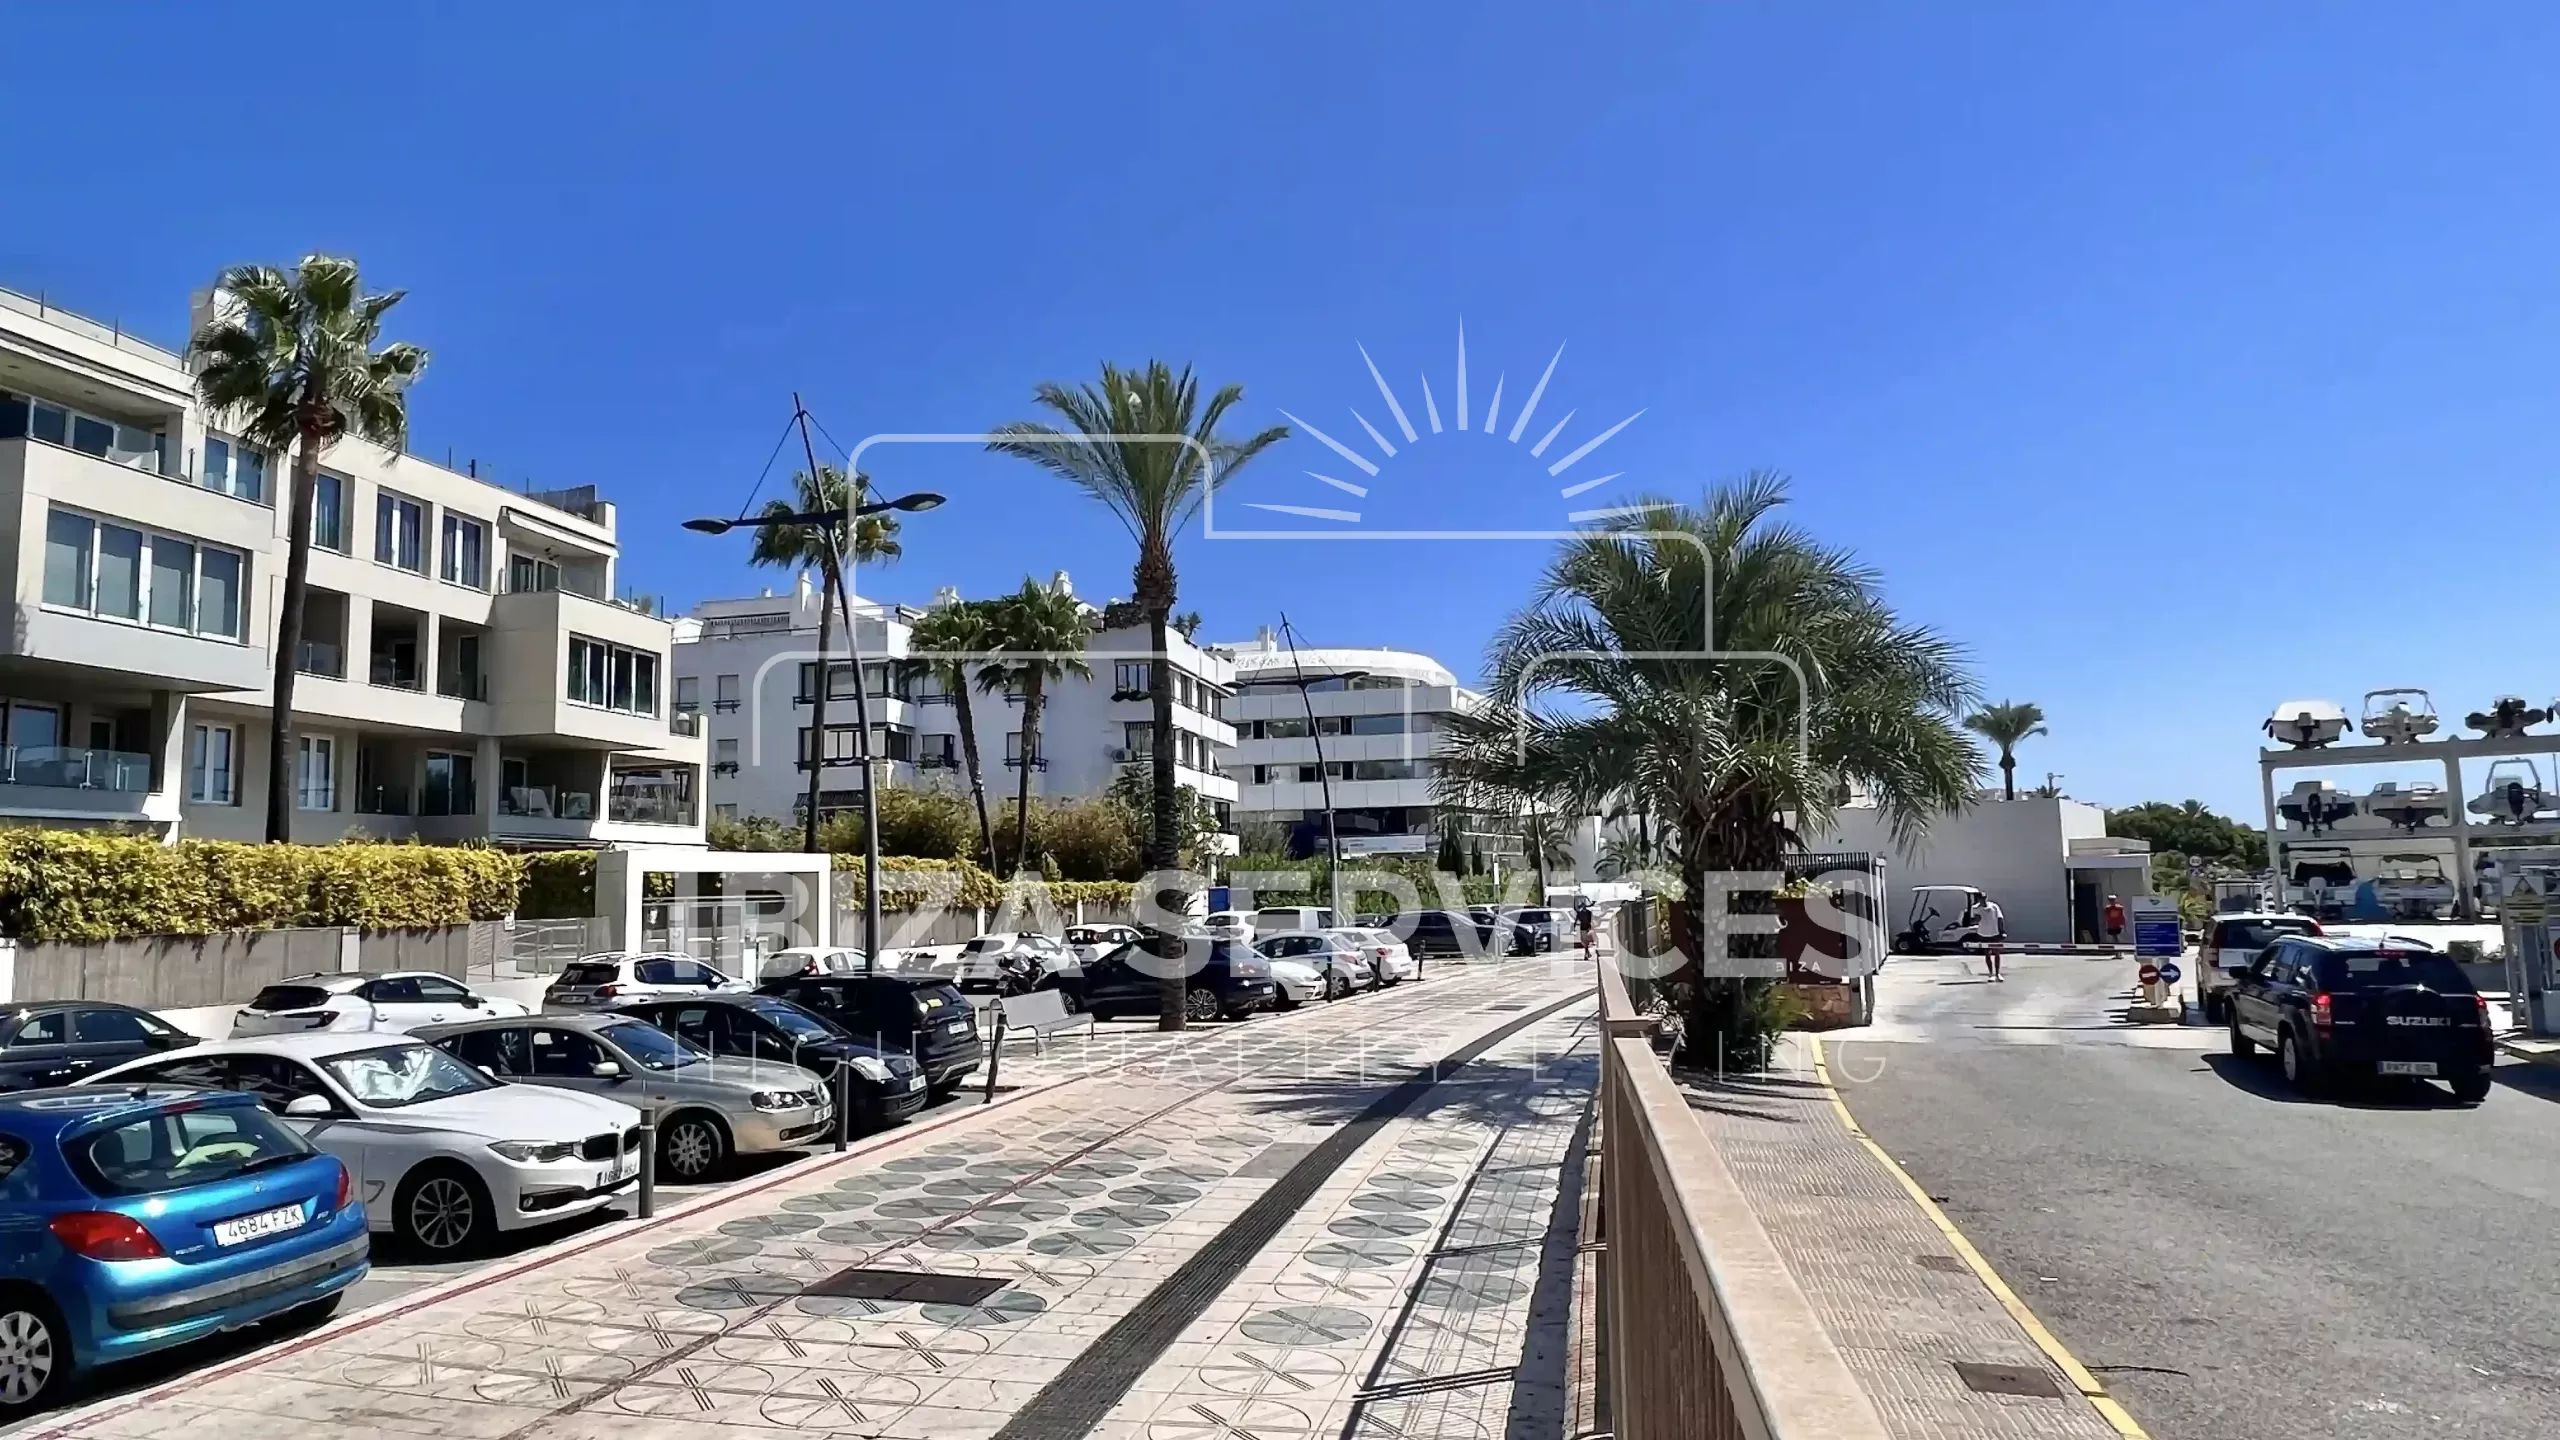 Uitzonderlijke commerciële ruimte in Marina Botafoch, Ibiza: Een unieke investeringskans